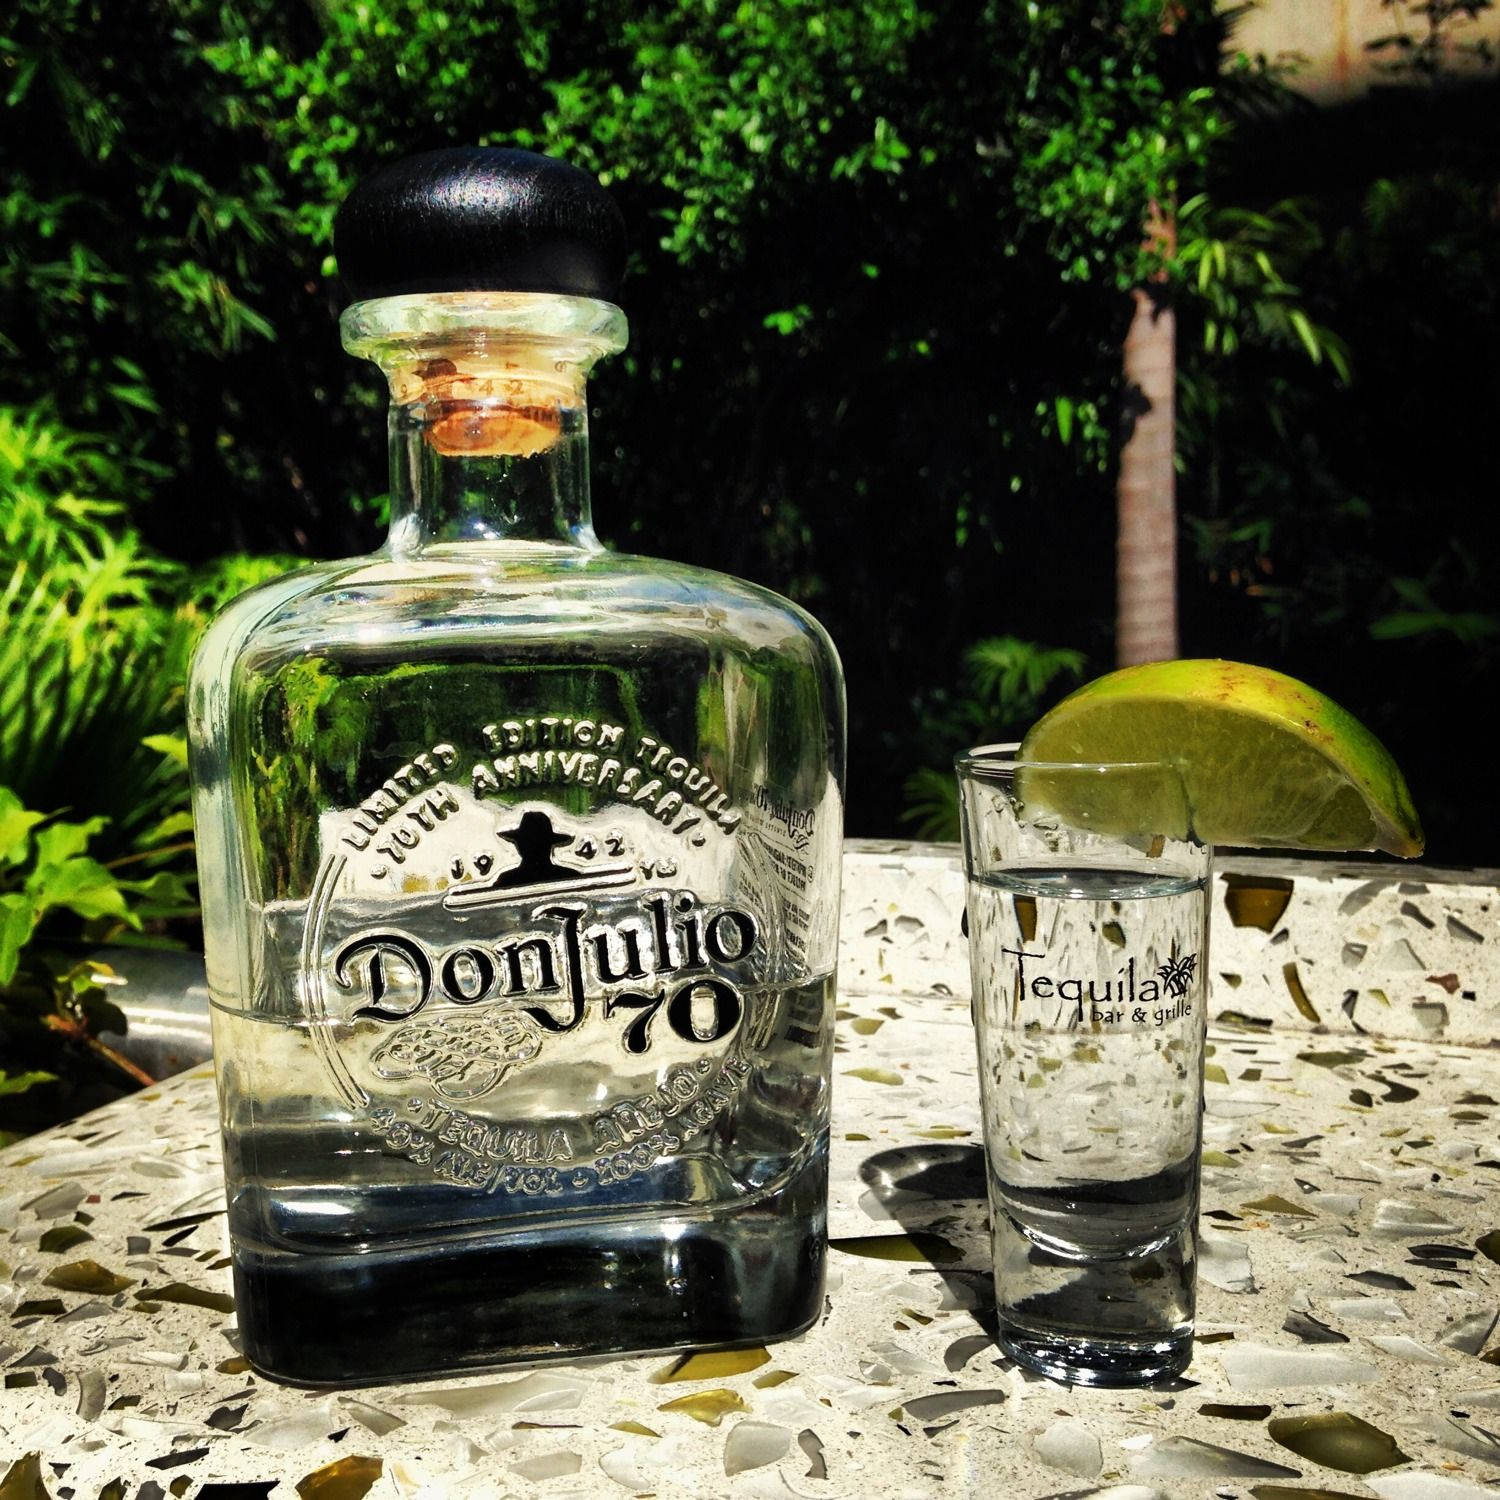 Donjulio Tequila På Keramiskt Bord. Wallpaper